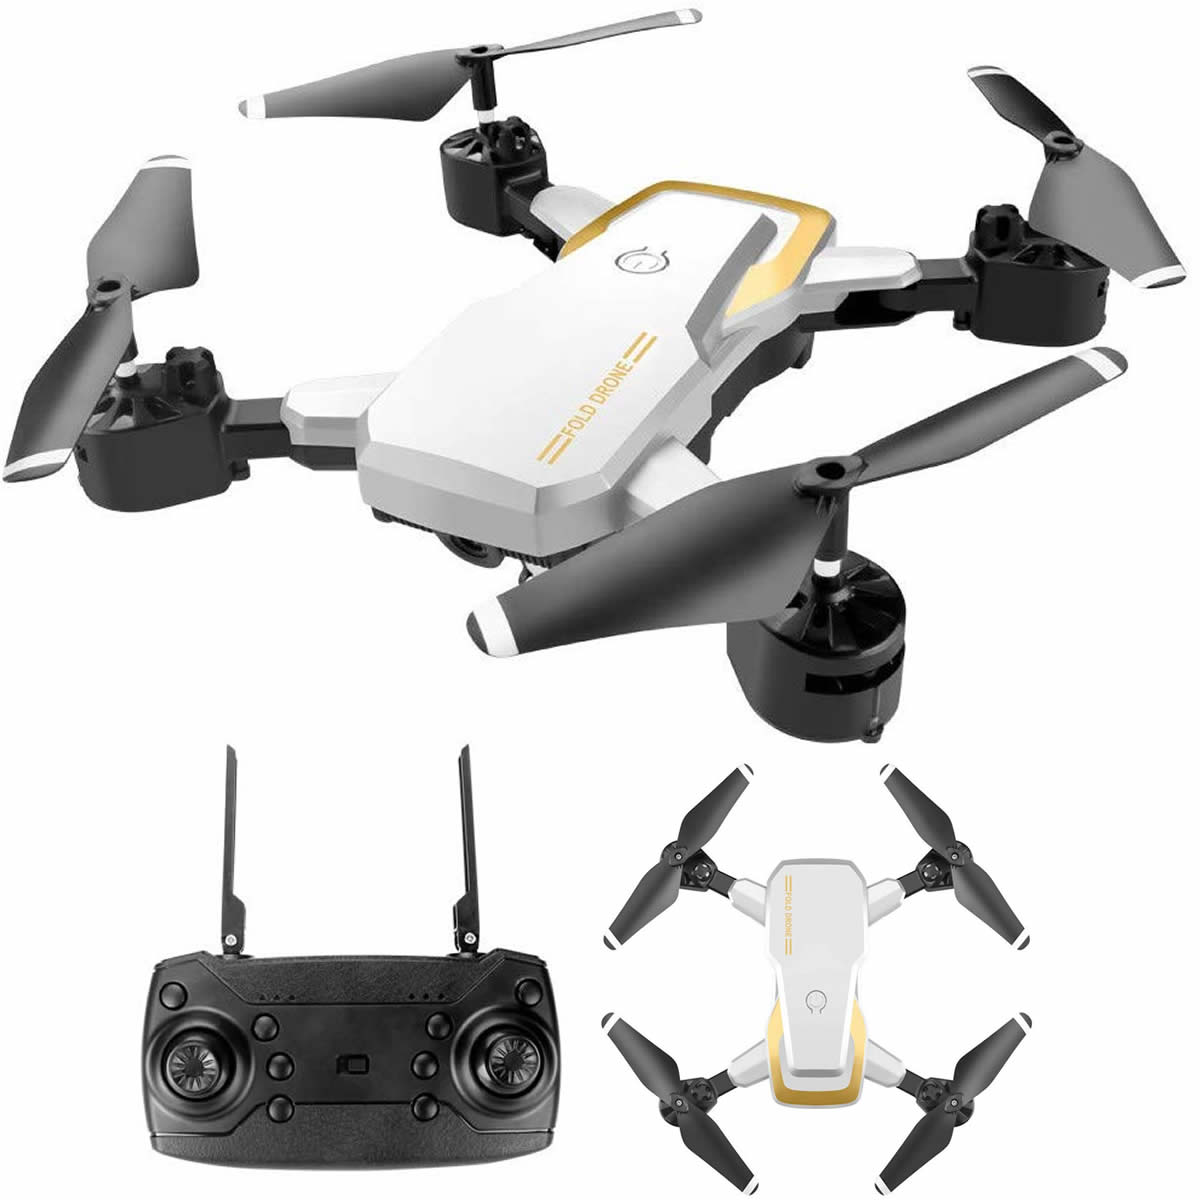 Drone Quadcopter pro wifi FPV plegable camara 1080 HD